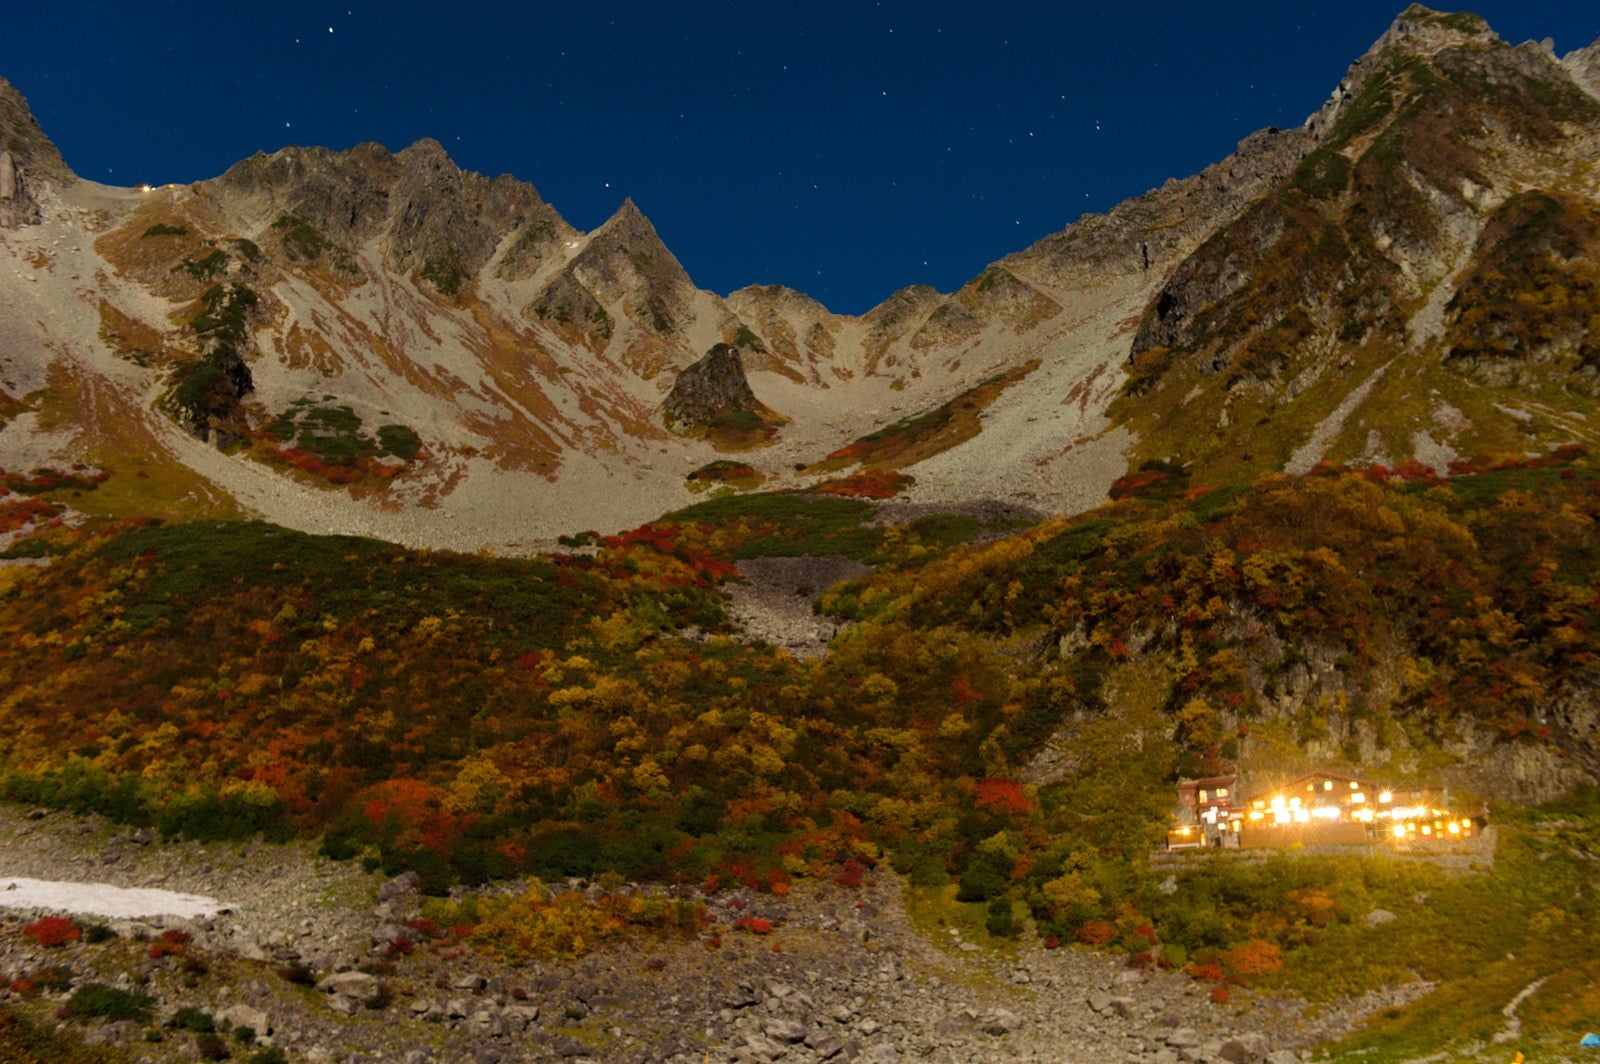 「星がまたたく紅葉シーズンの涸沢カールの夜」の写真